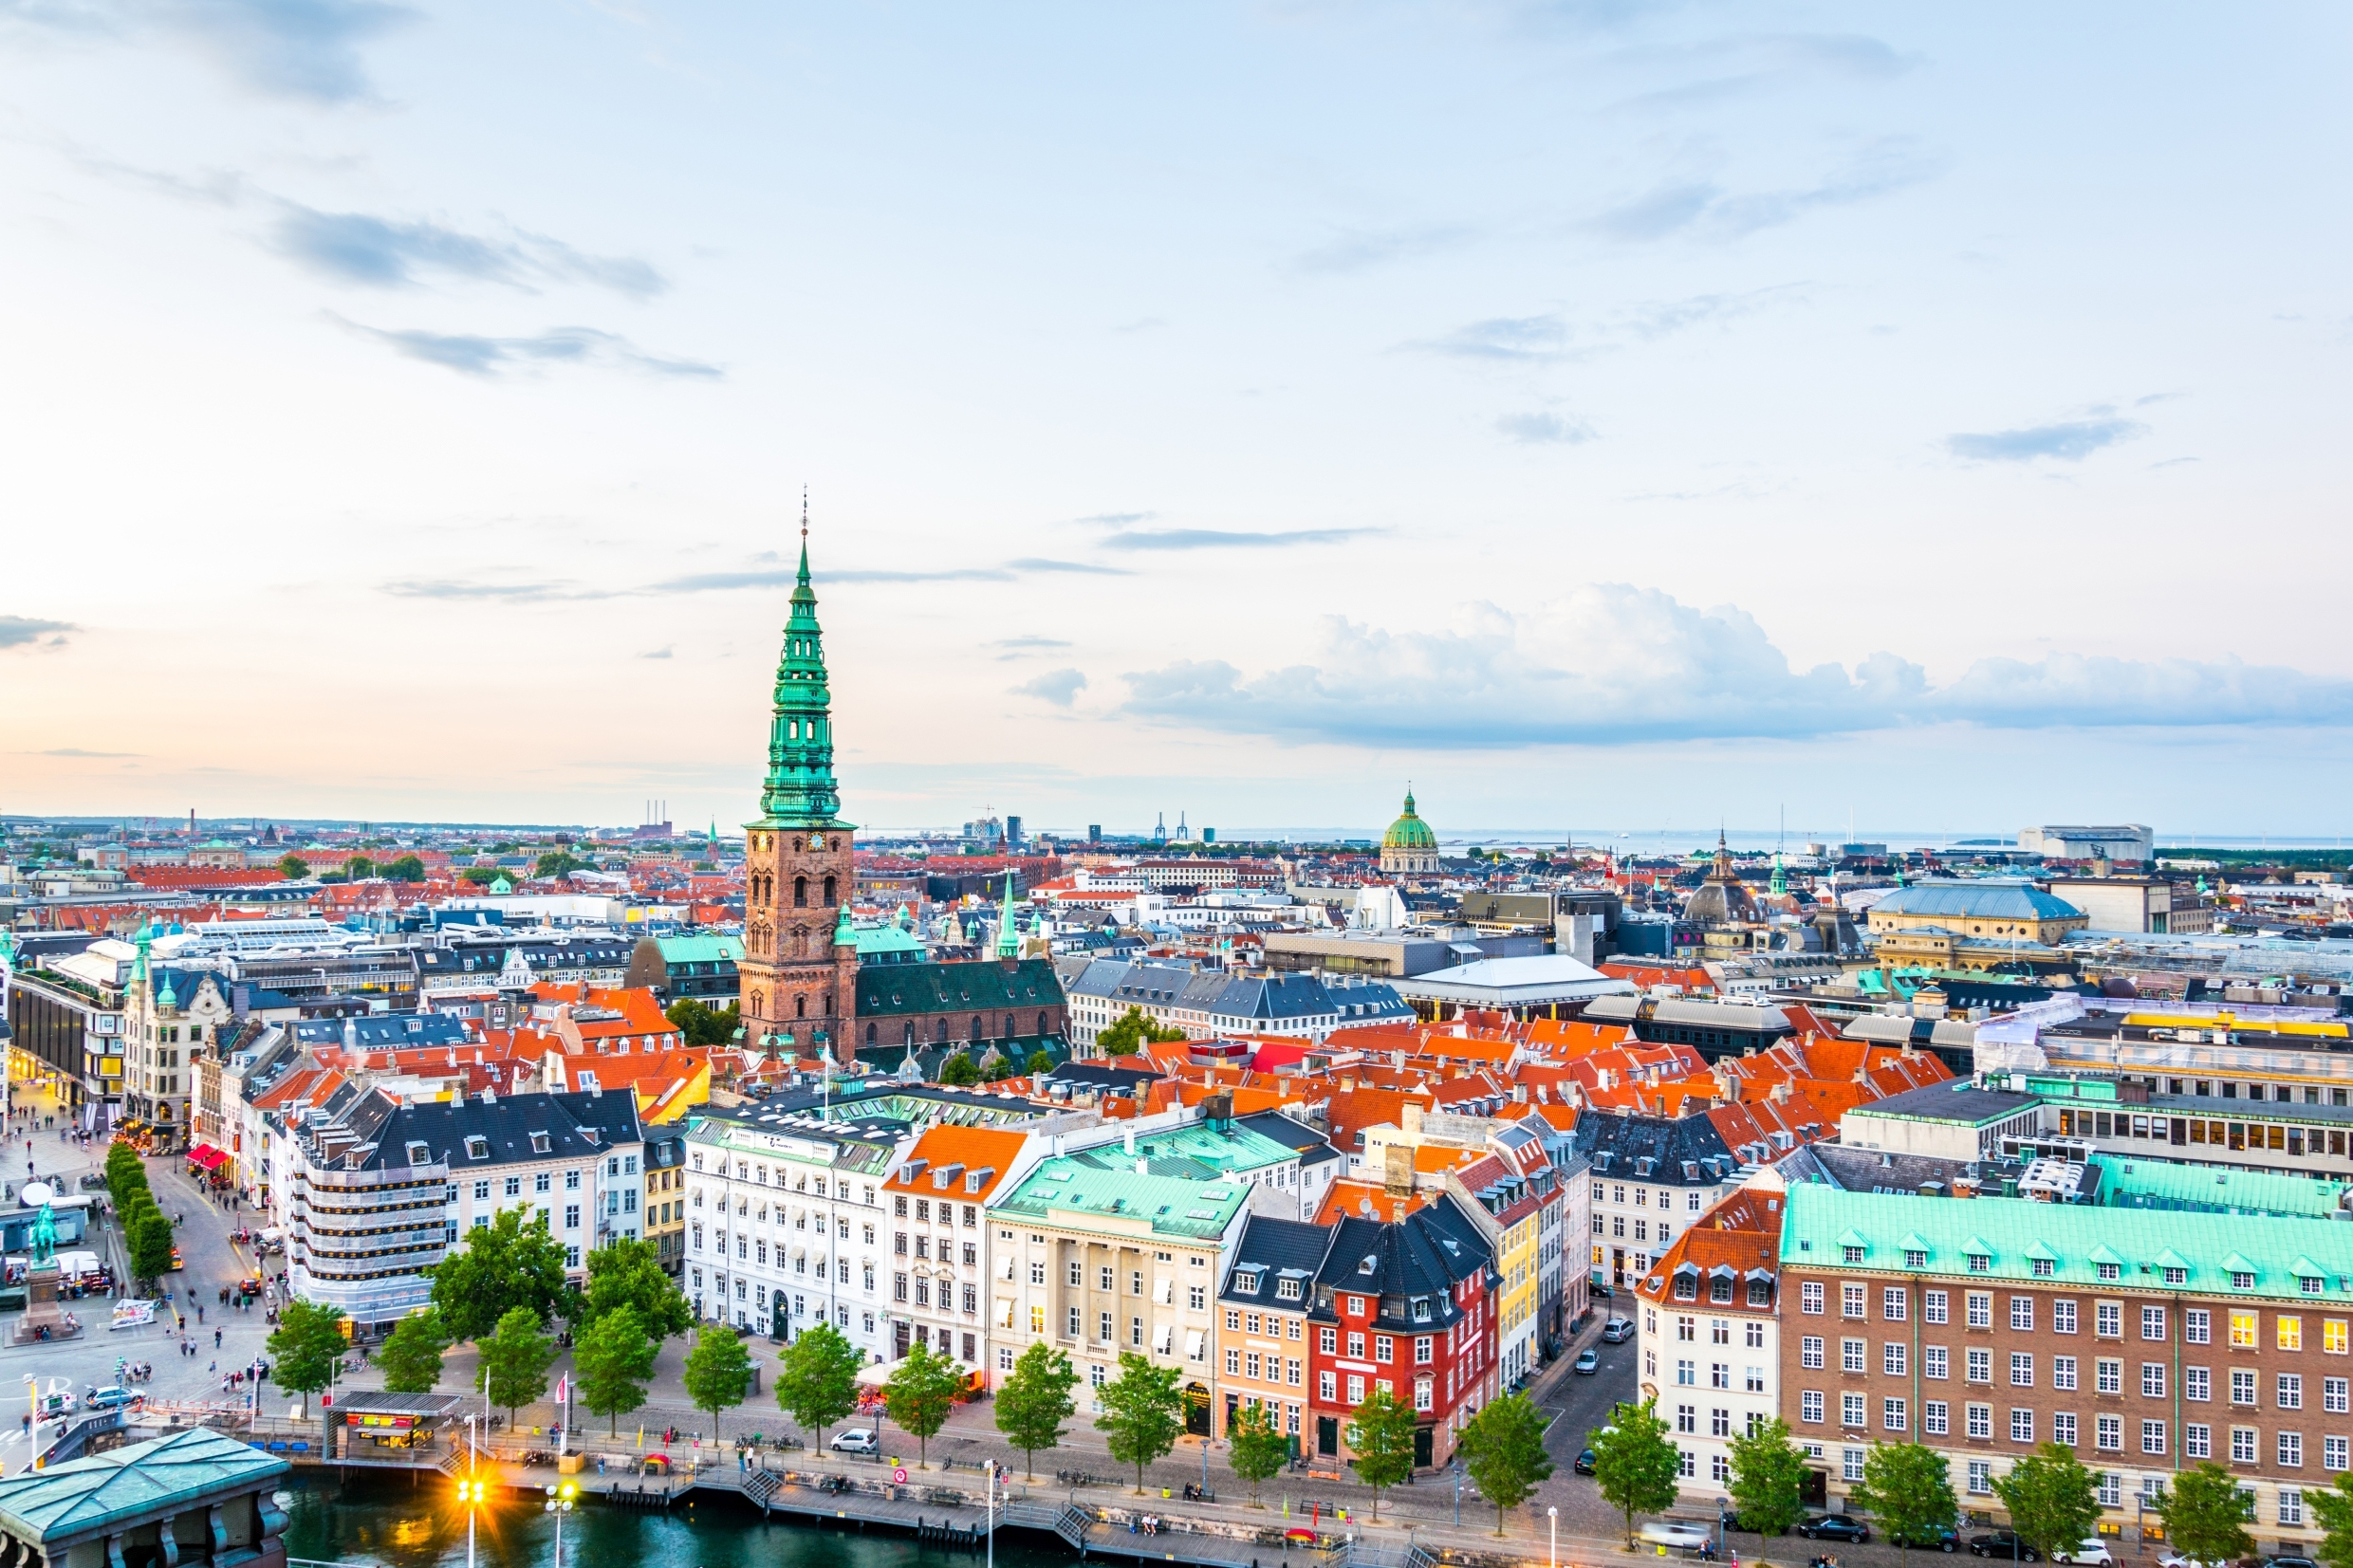 Копенгаген, столица Дании, ПМЖ которой могут получить иностранцы